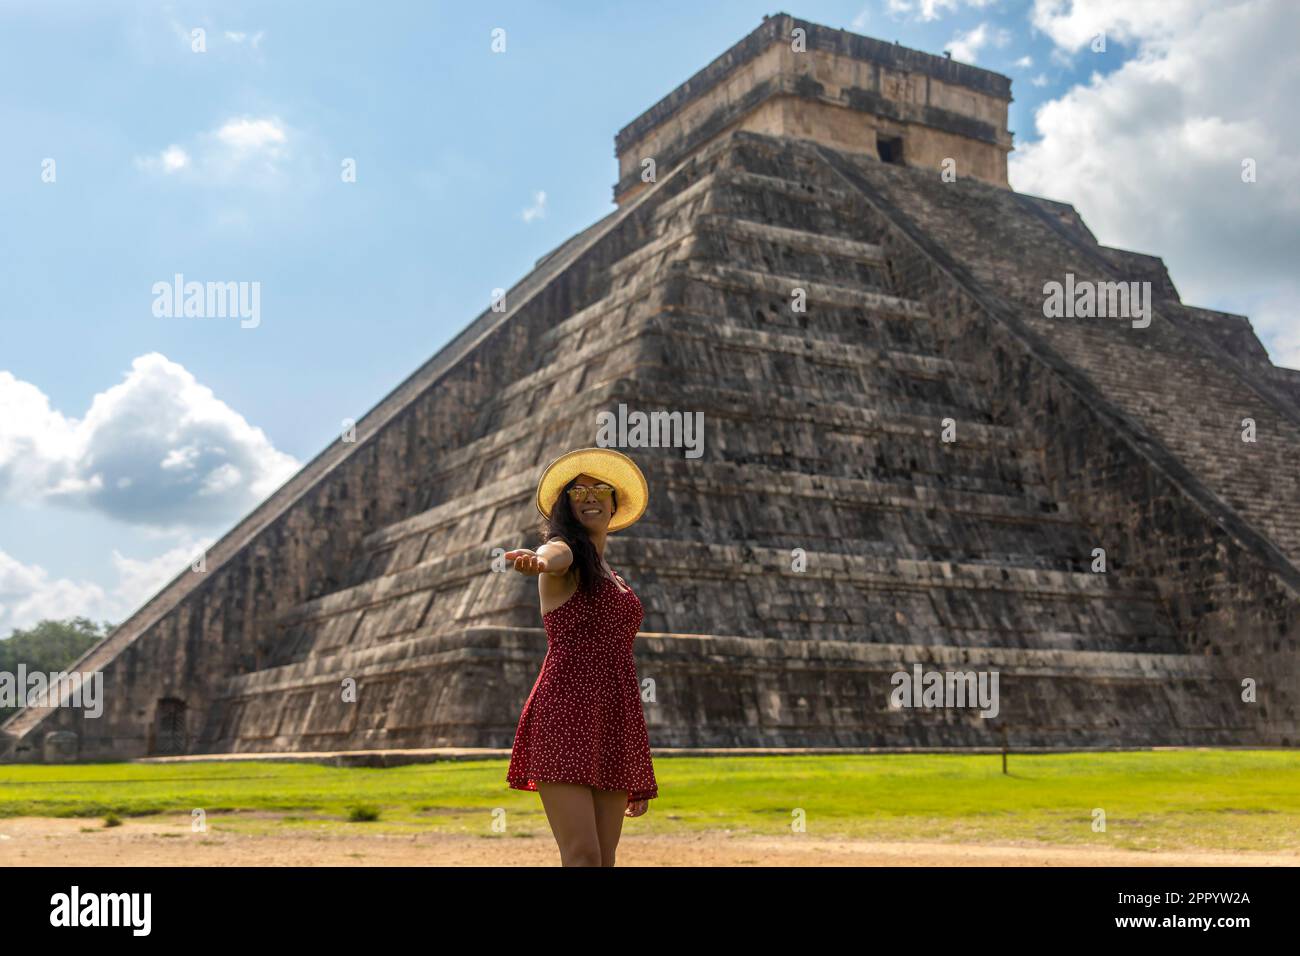 Junger Tourist, der das Schloss Chichen Itza, die berühmte Maya-Pyramide von Mexiko, besucht und genießt, gehört zur Maya-Kultur und -Zivilisation. T Stockfoto